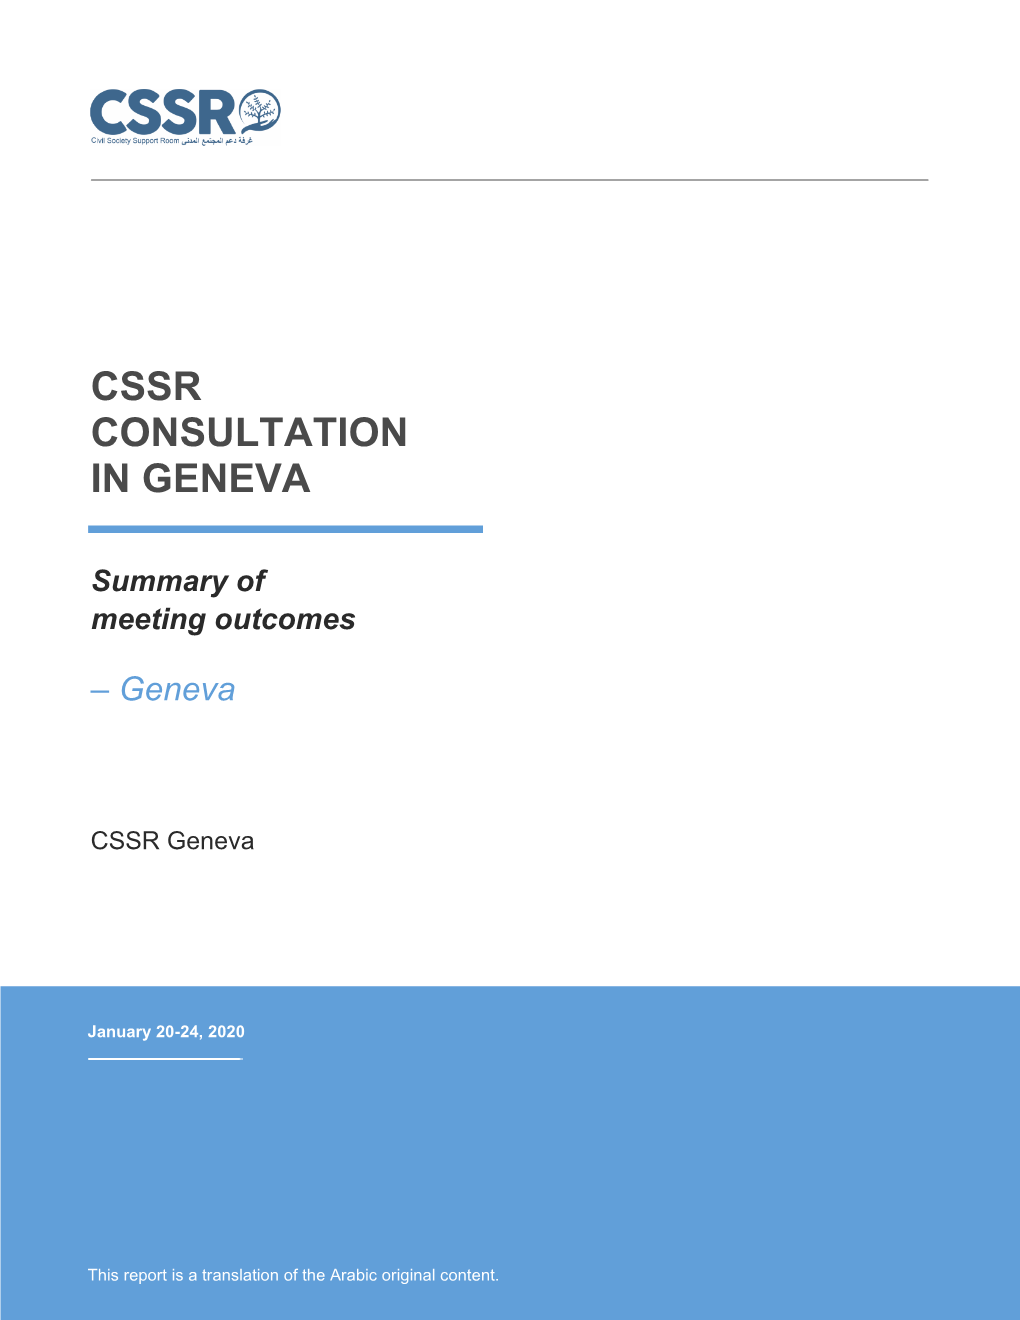 Cssr Consultation in Geneva